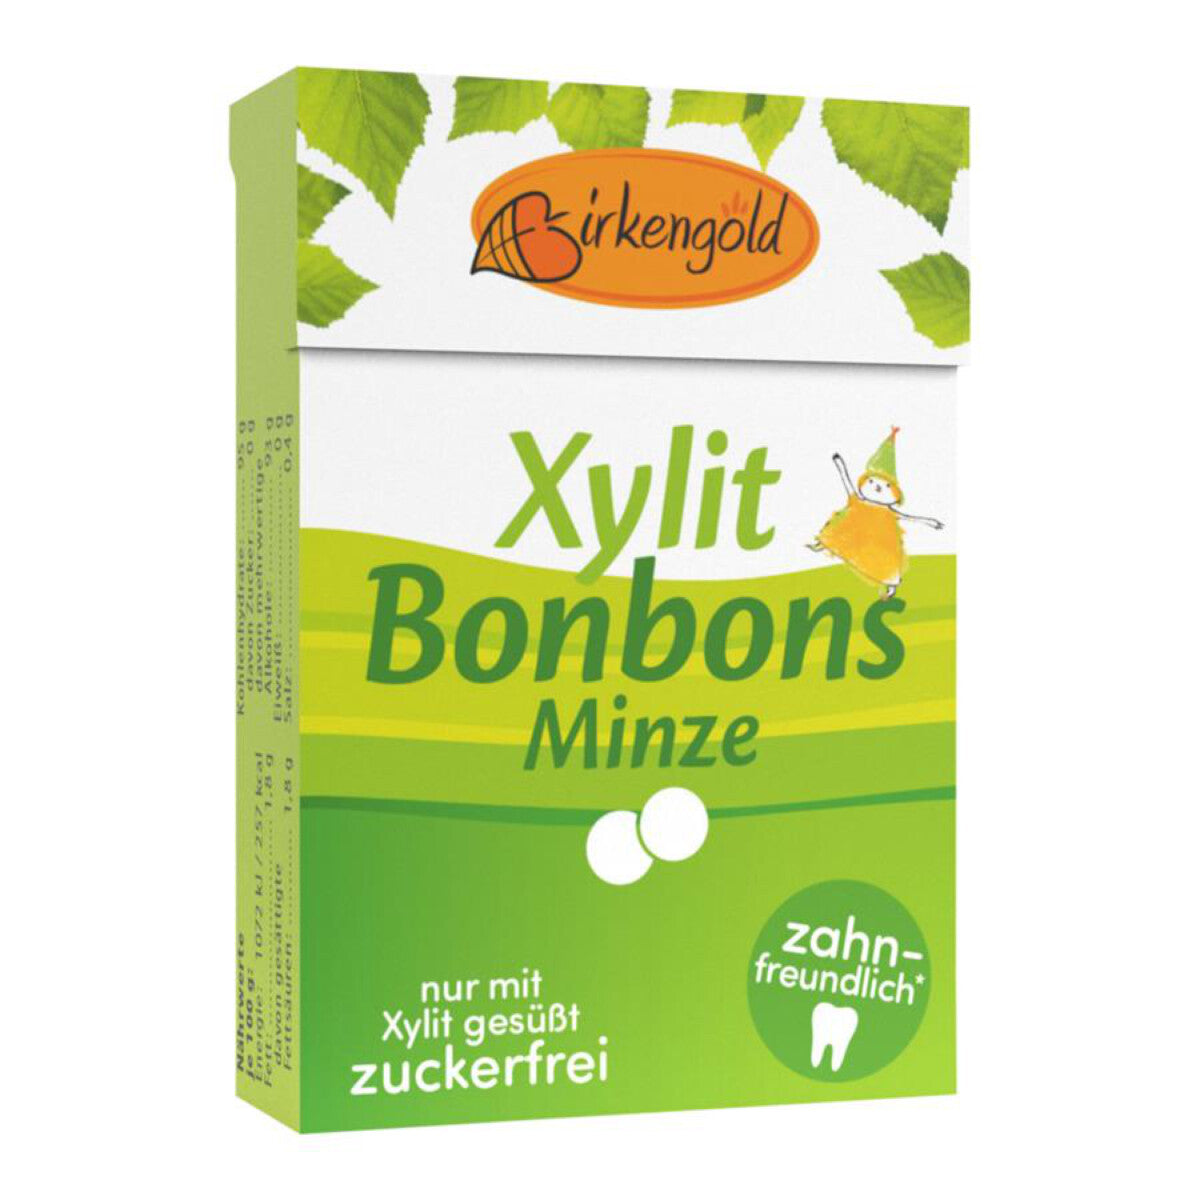 BIRKENGOLD Xylit Bonbons Minze - 30 g